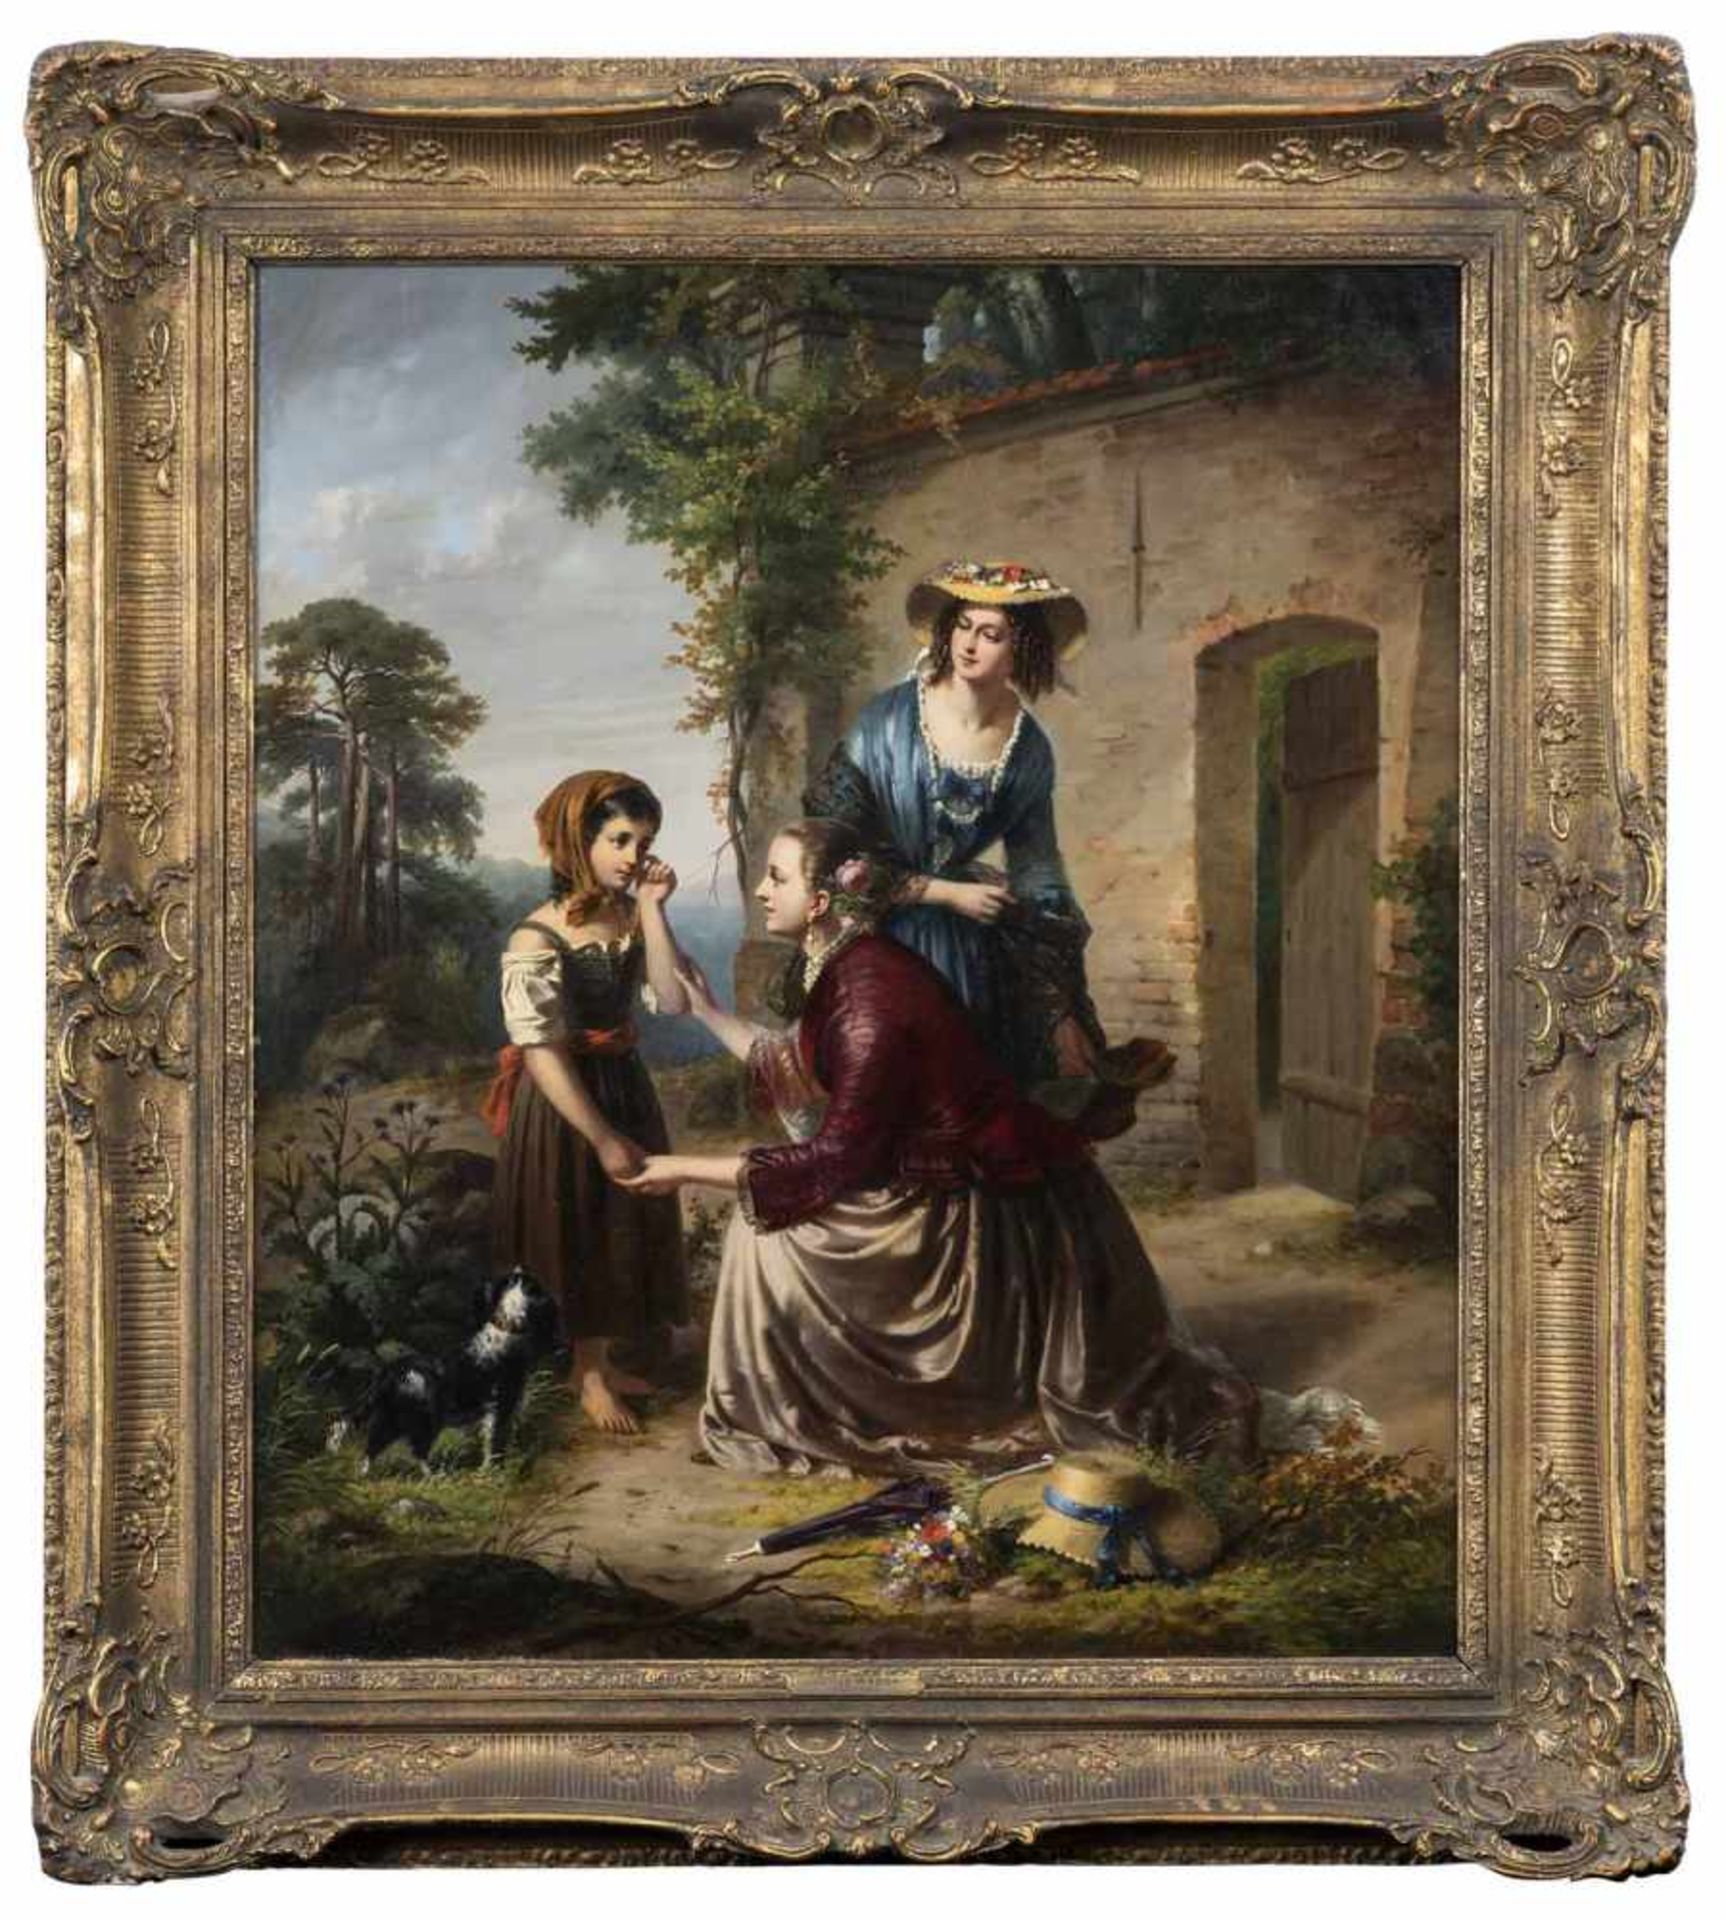 Weyde, JuliusBerlin 1822 - Stettin 186080 x 70 cmVerirrtes Mädchen, dessen sich zwei junge Damen